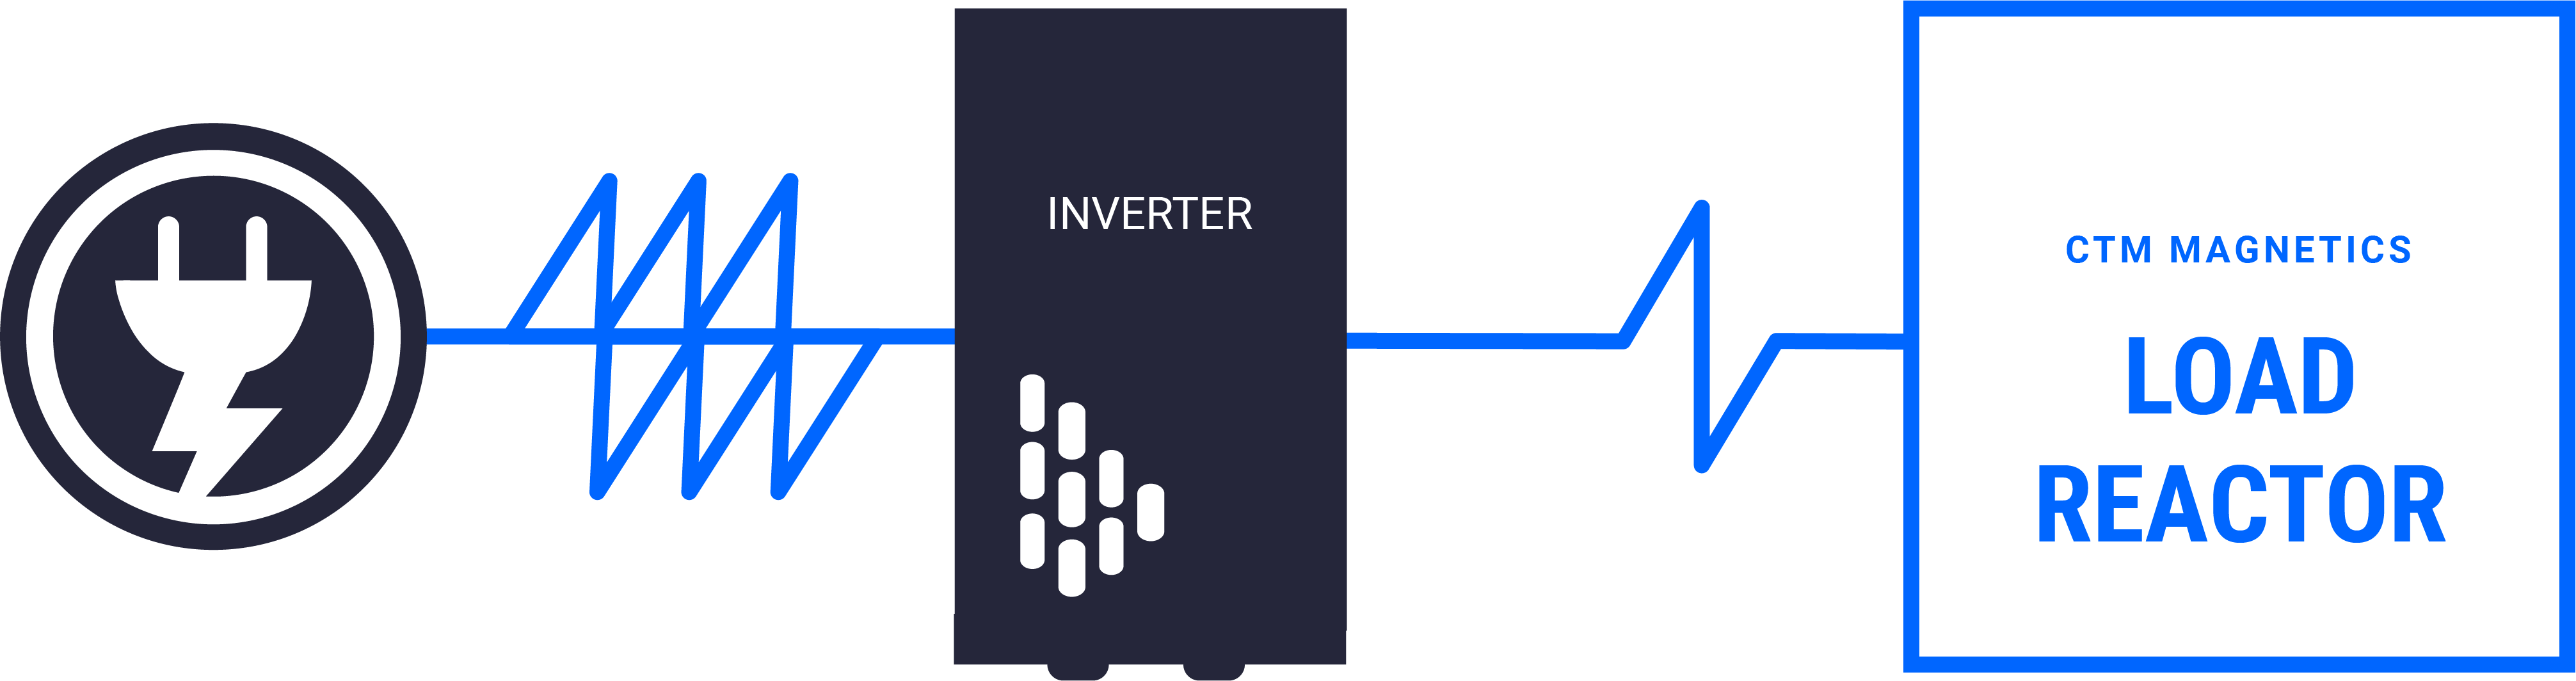 Inverter-Load Reactor